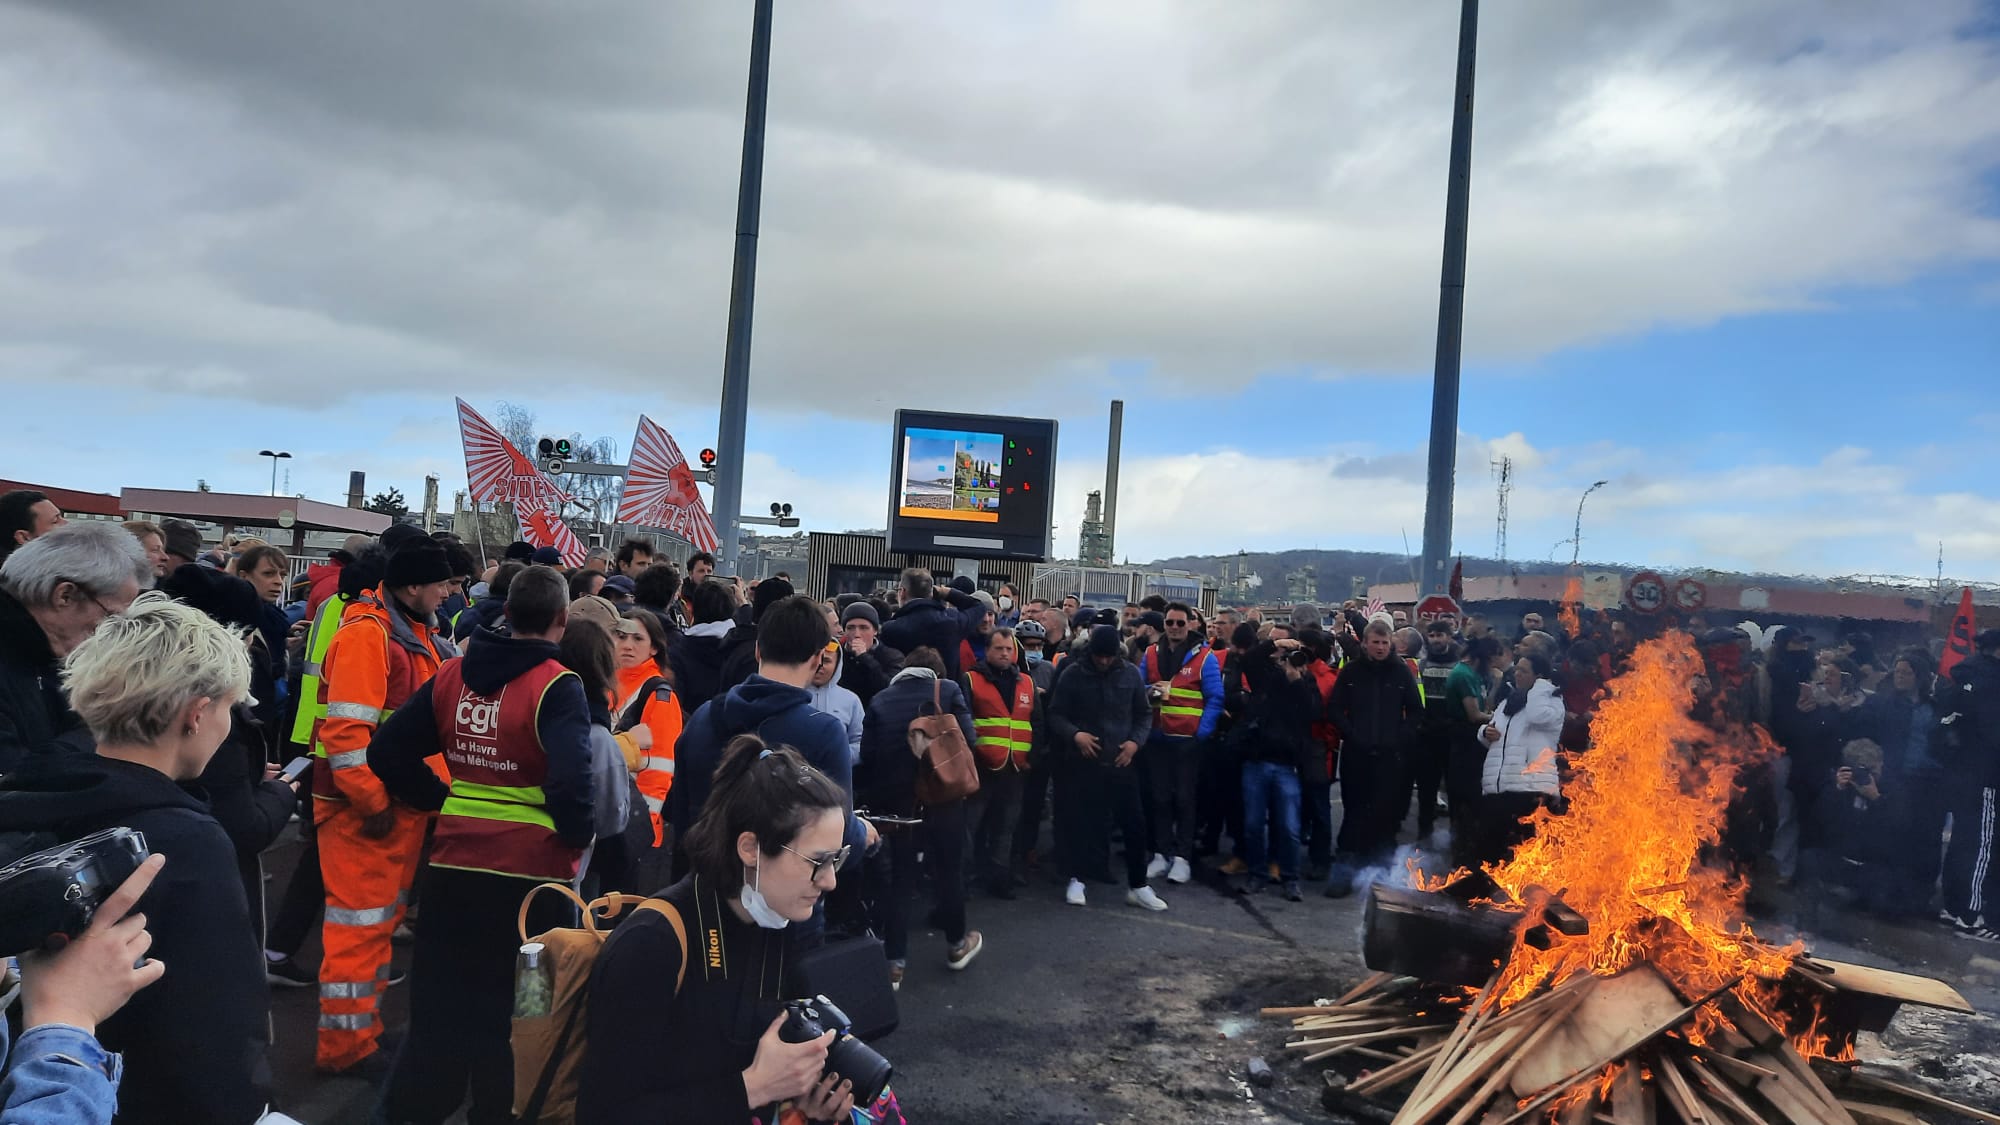 Réquisitions : Macron veut briser nos grèves reconductibles, le mouvement ouvrier doit réagir !